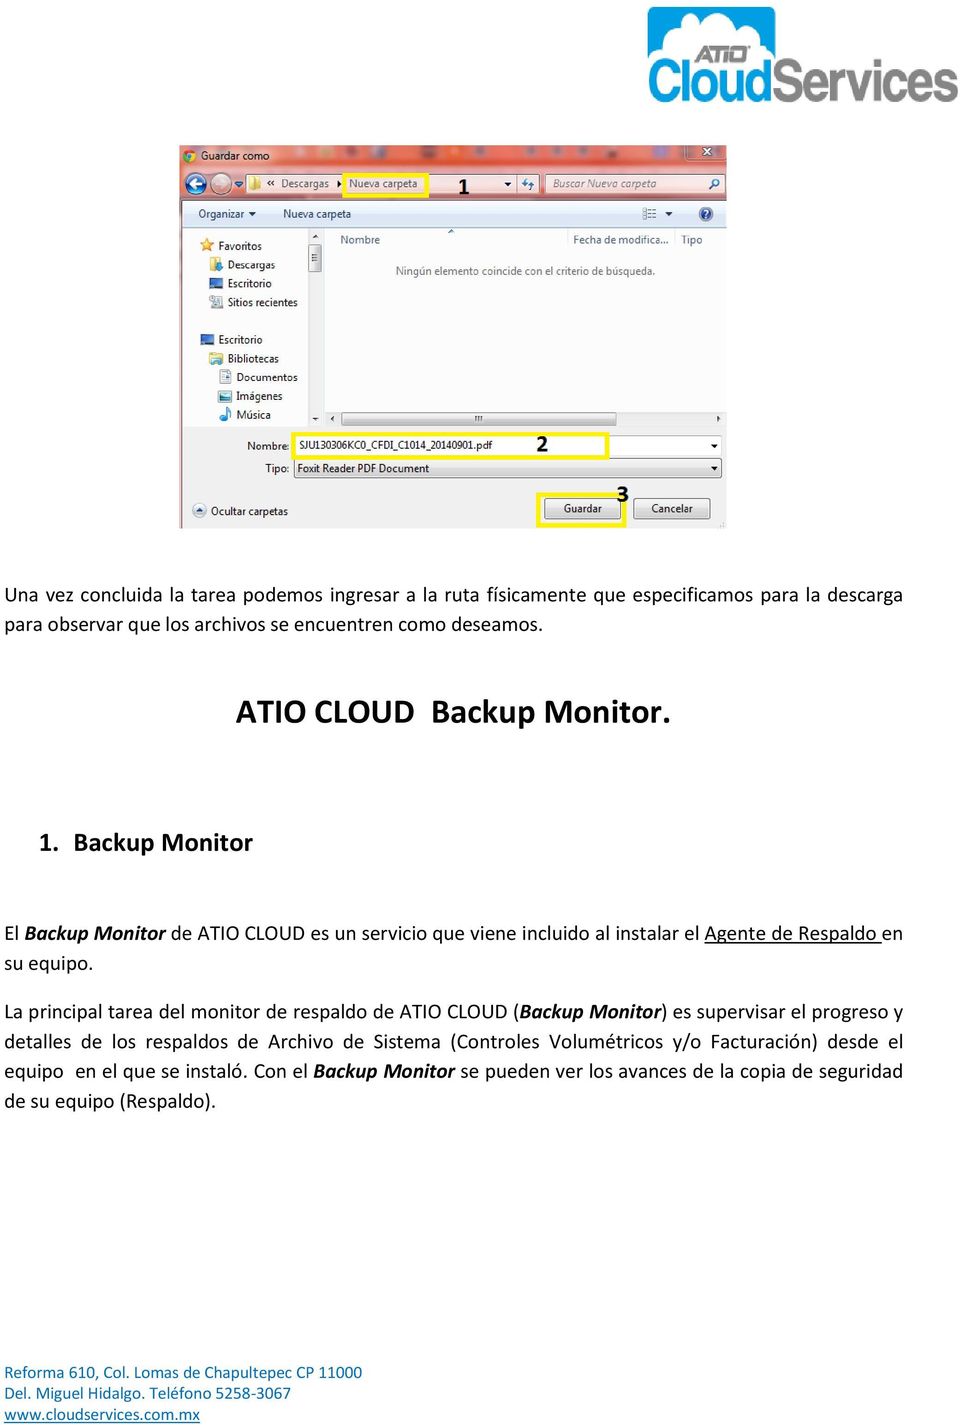 La principal tarea del monitor de respaldo de ATIO CLOUD (Backup Monitor) es supervisar el progreso y detalles de los respaldos de Archivo de Sistema (Controles